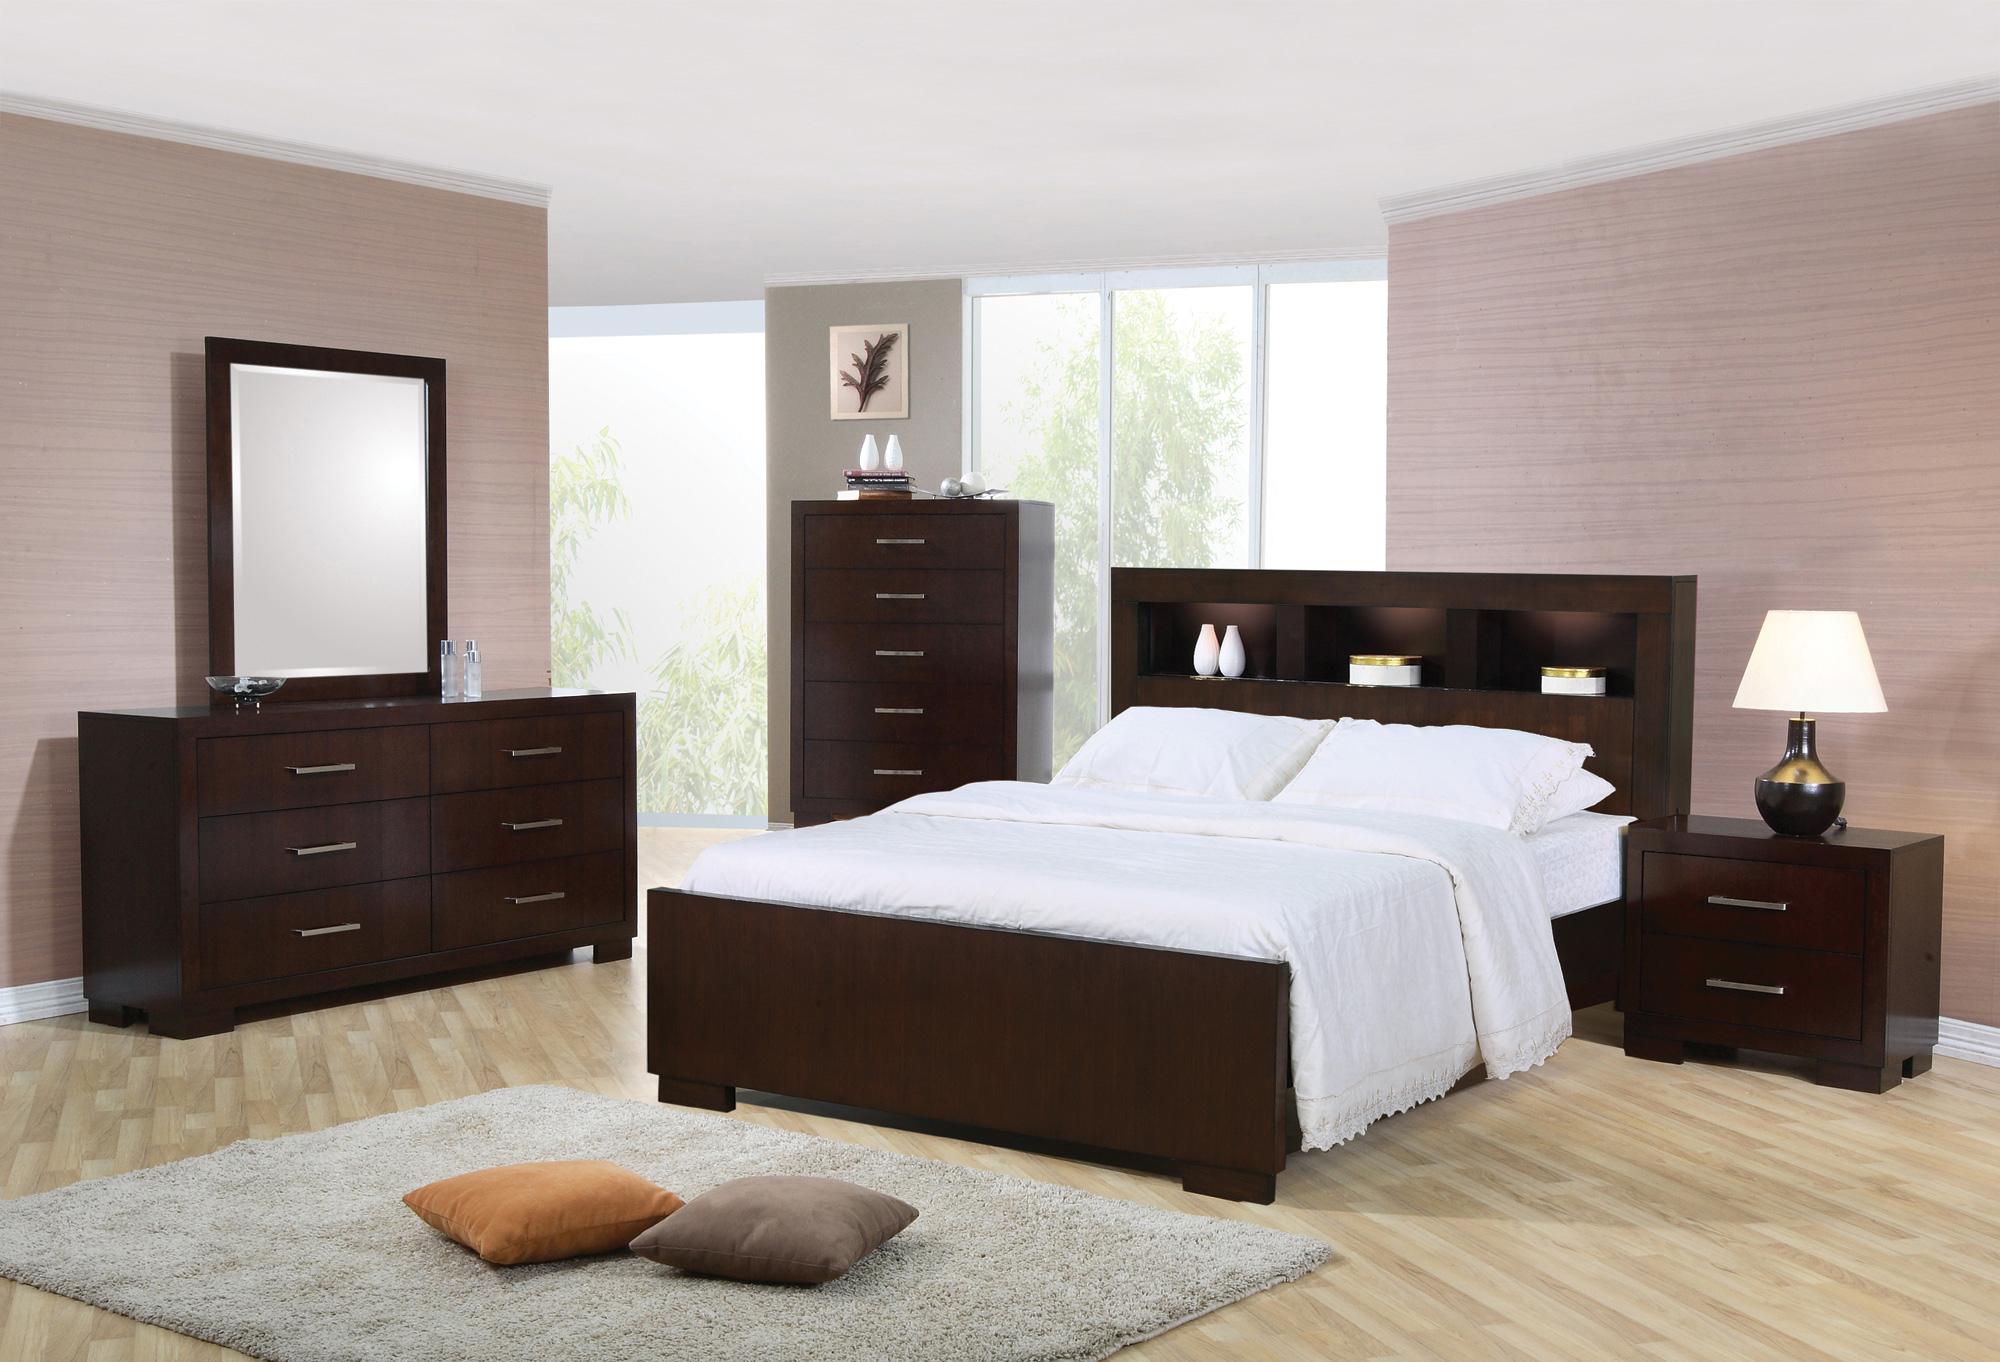 jordan's bedroom furniture set for sale